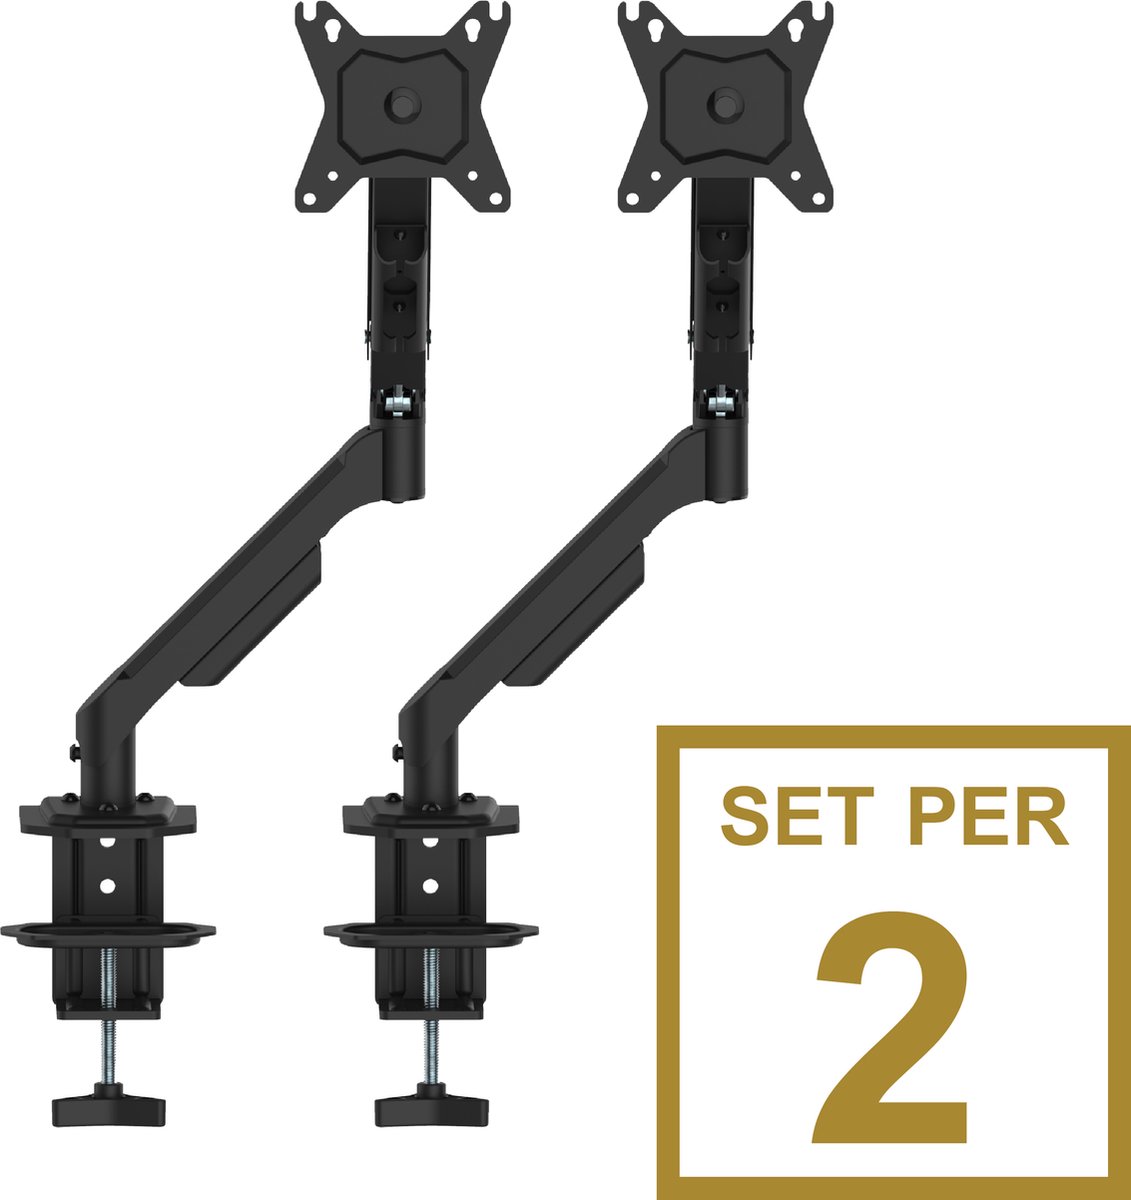 Alora Monitorarm 13-32 Inch zwart - draaibaar - kantelbaar - zwenkbaar - staal - voor 2 monitoren - Set van 2